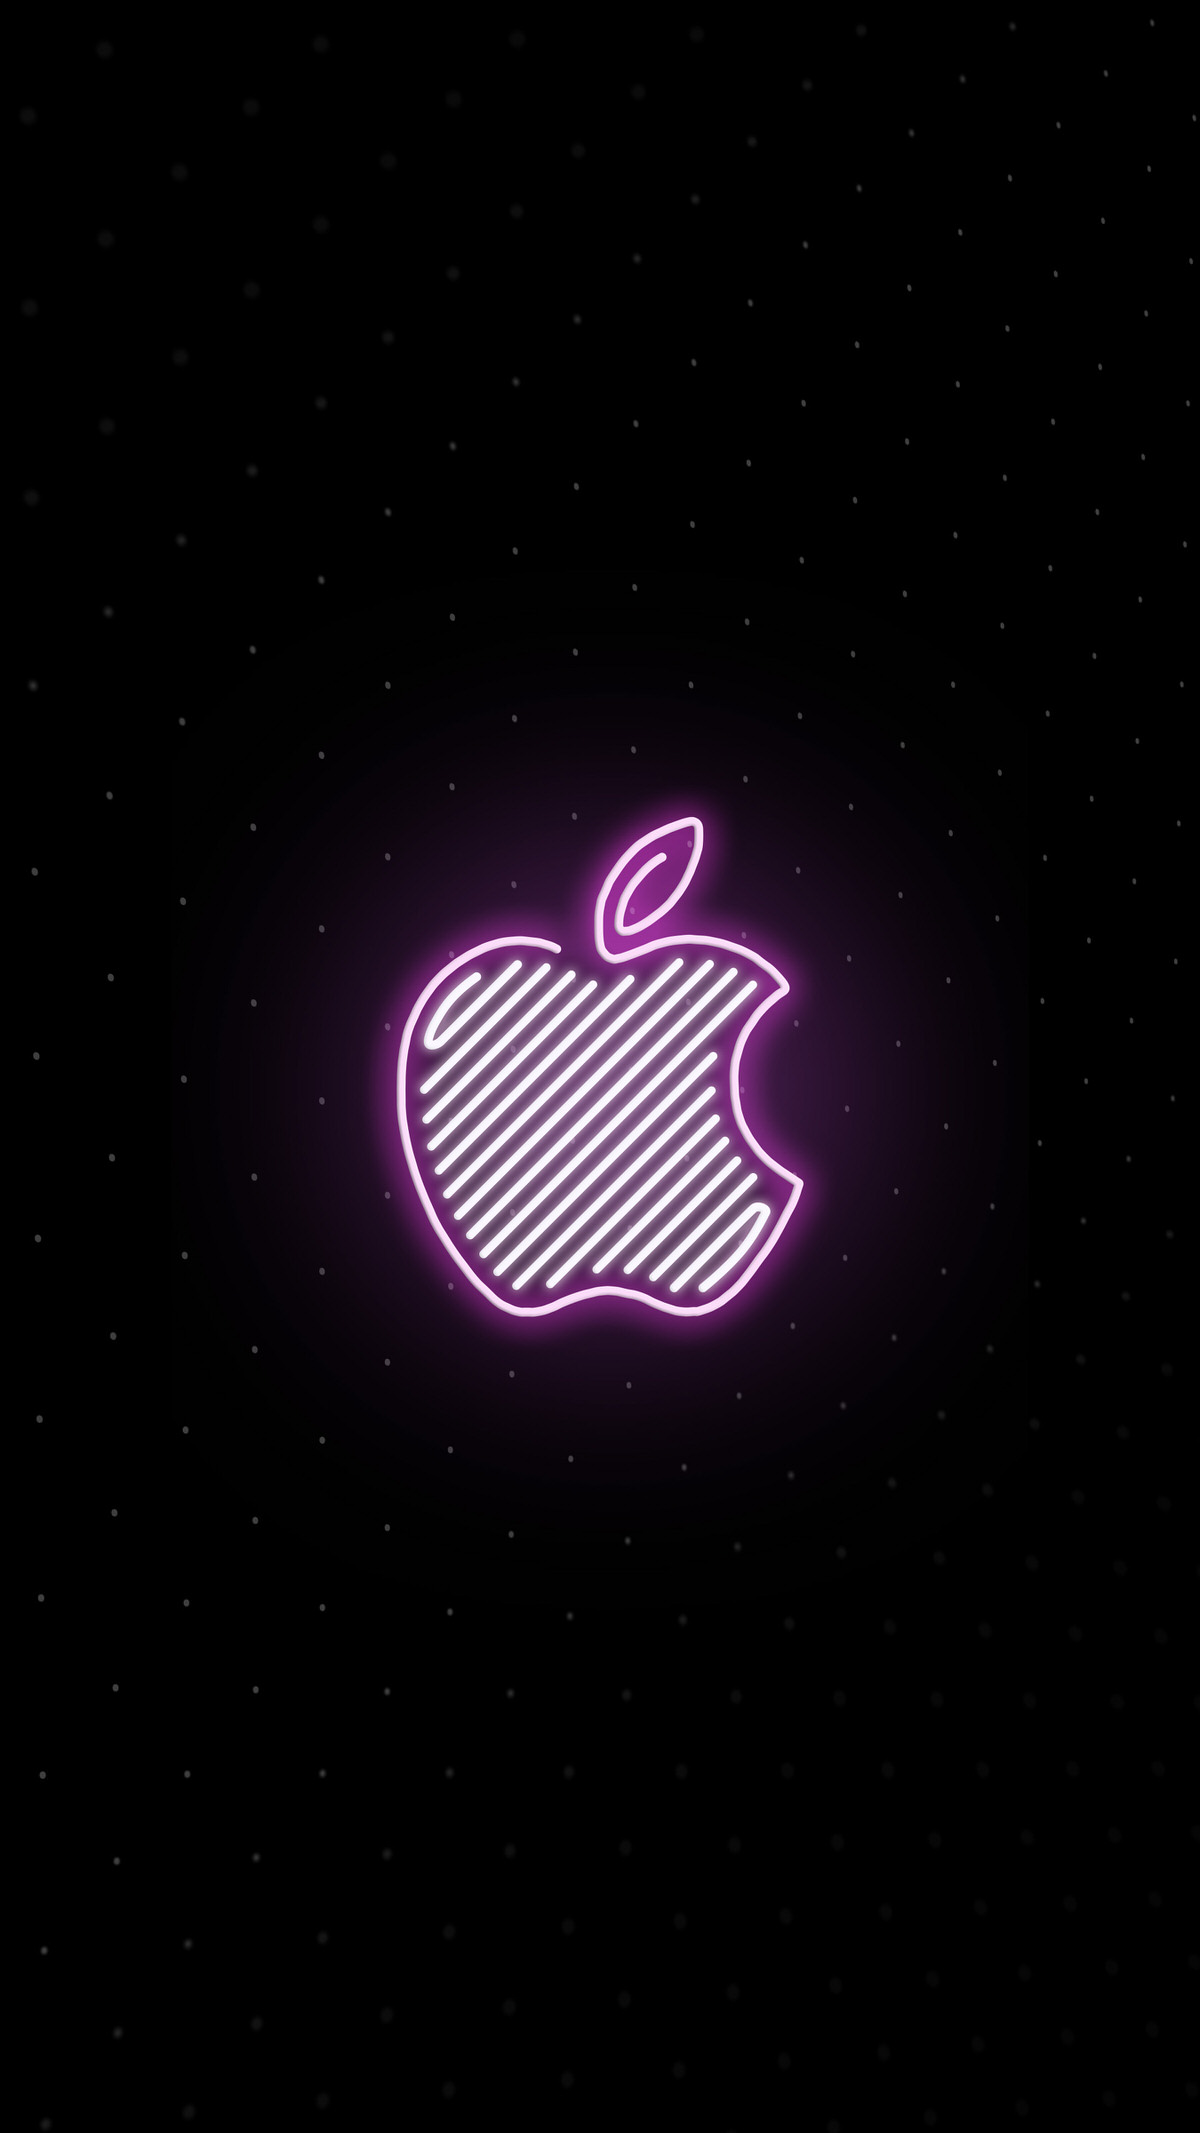 Apple 新宿 のロゴをあしらった壁紙が公開 Iphone Ipad Macに対応